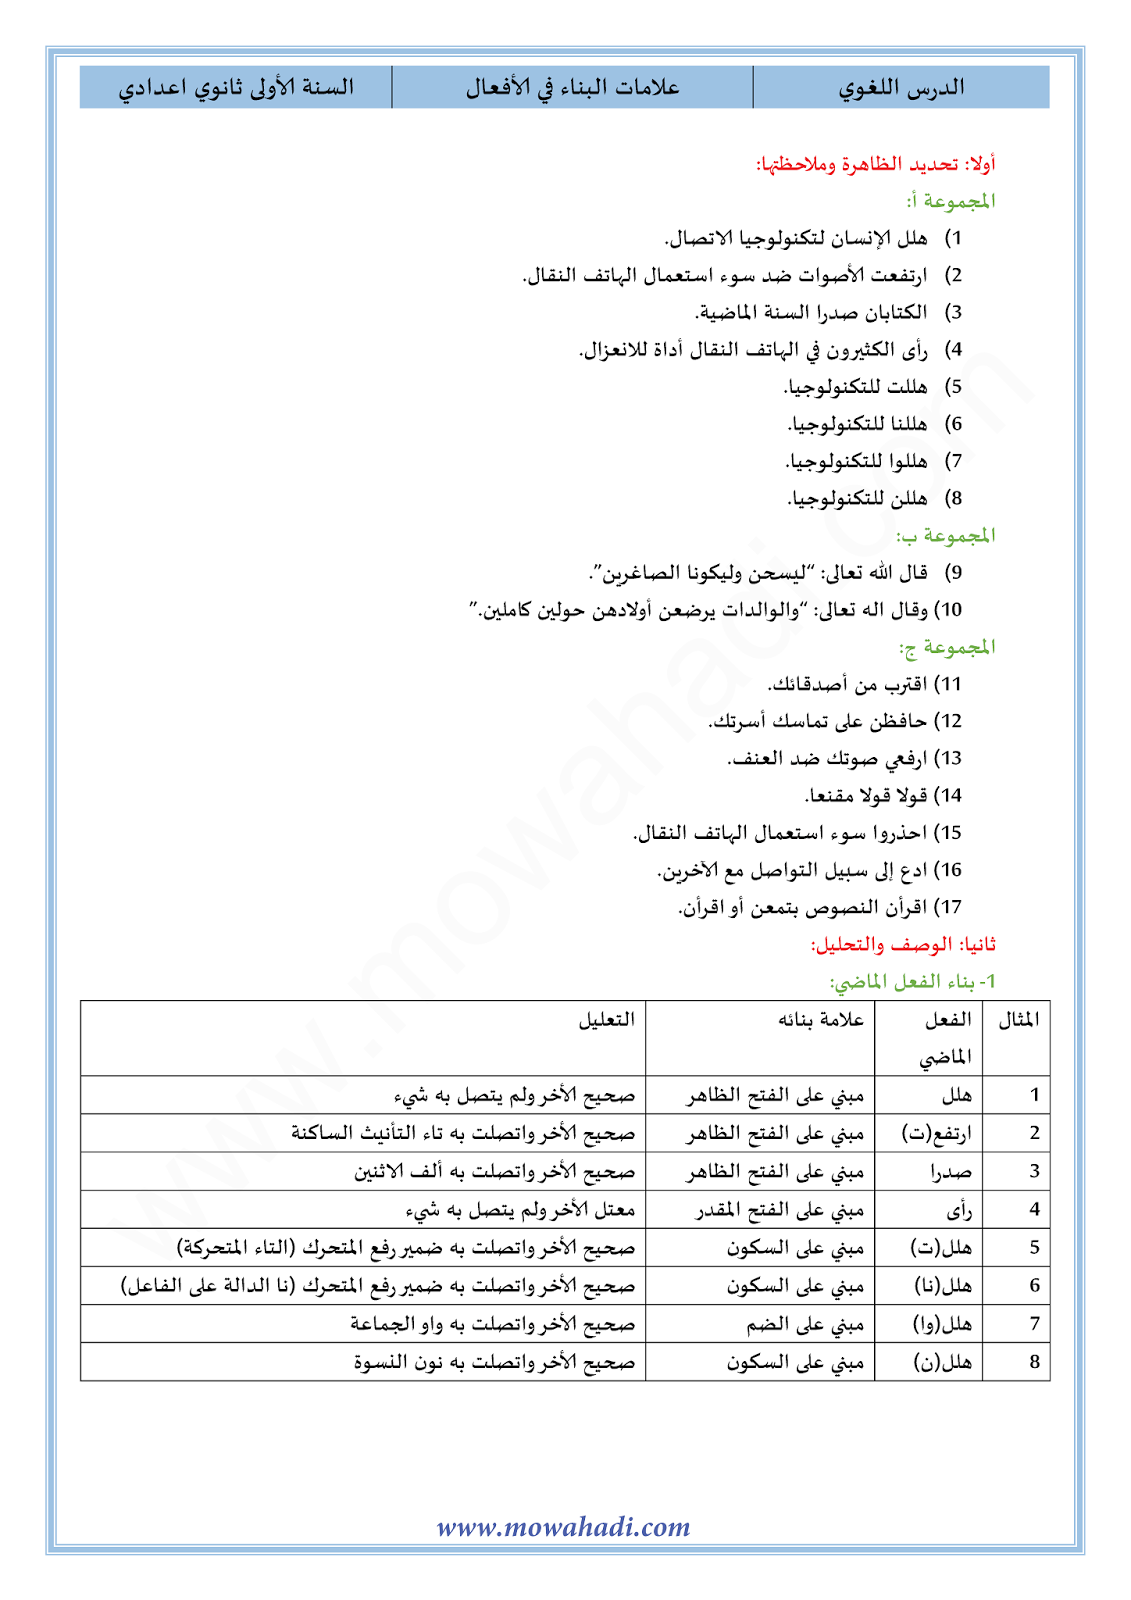 الدرس اللغوي علامات البناء في الأفعال للسنة الأولى اعدادي في مادة اللغة العربية 9-cours-dars-loghawi1_001